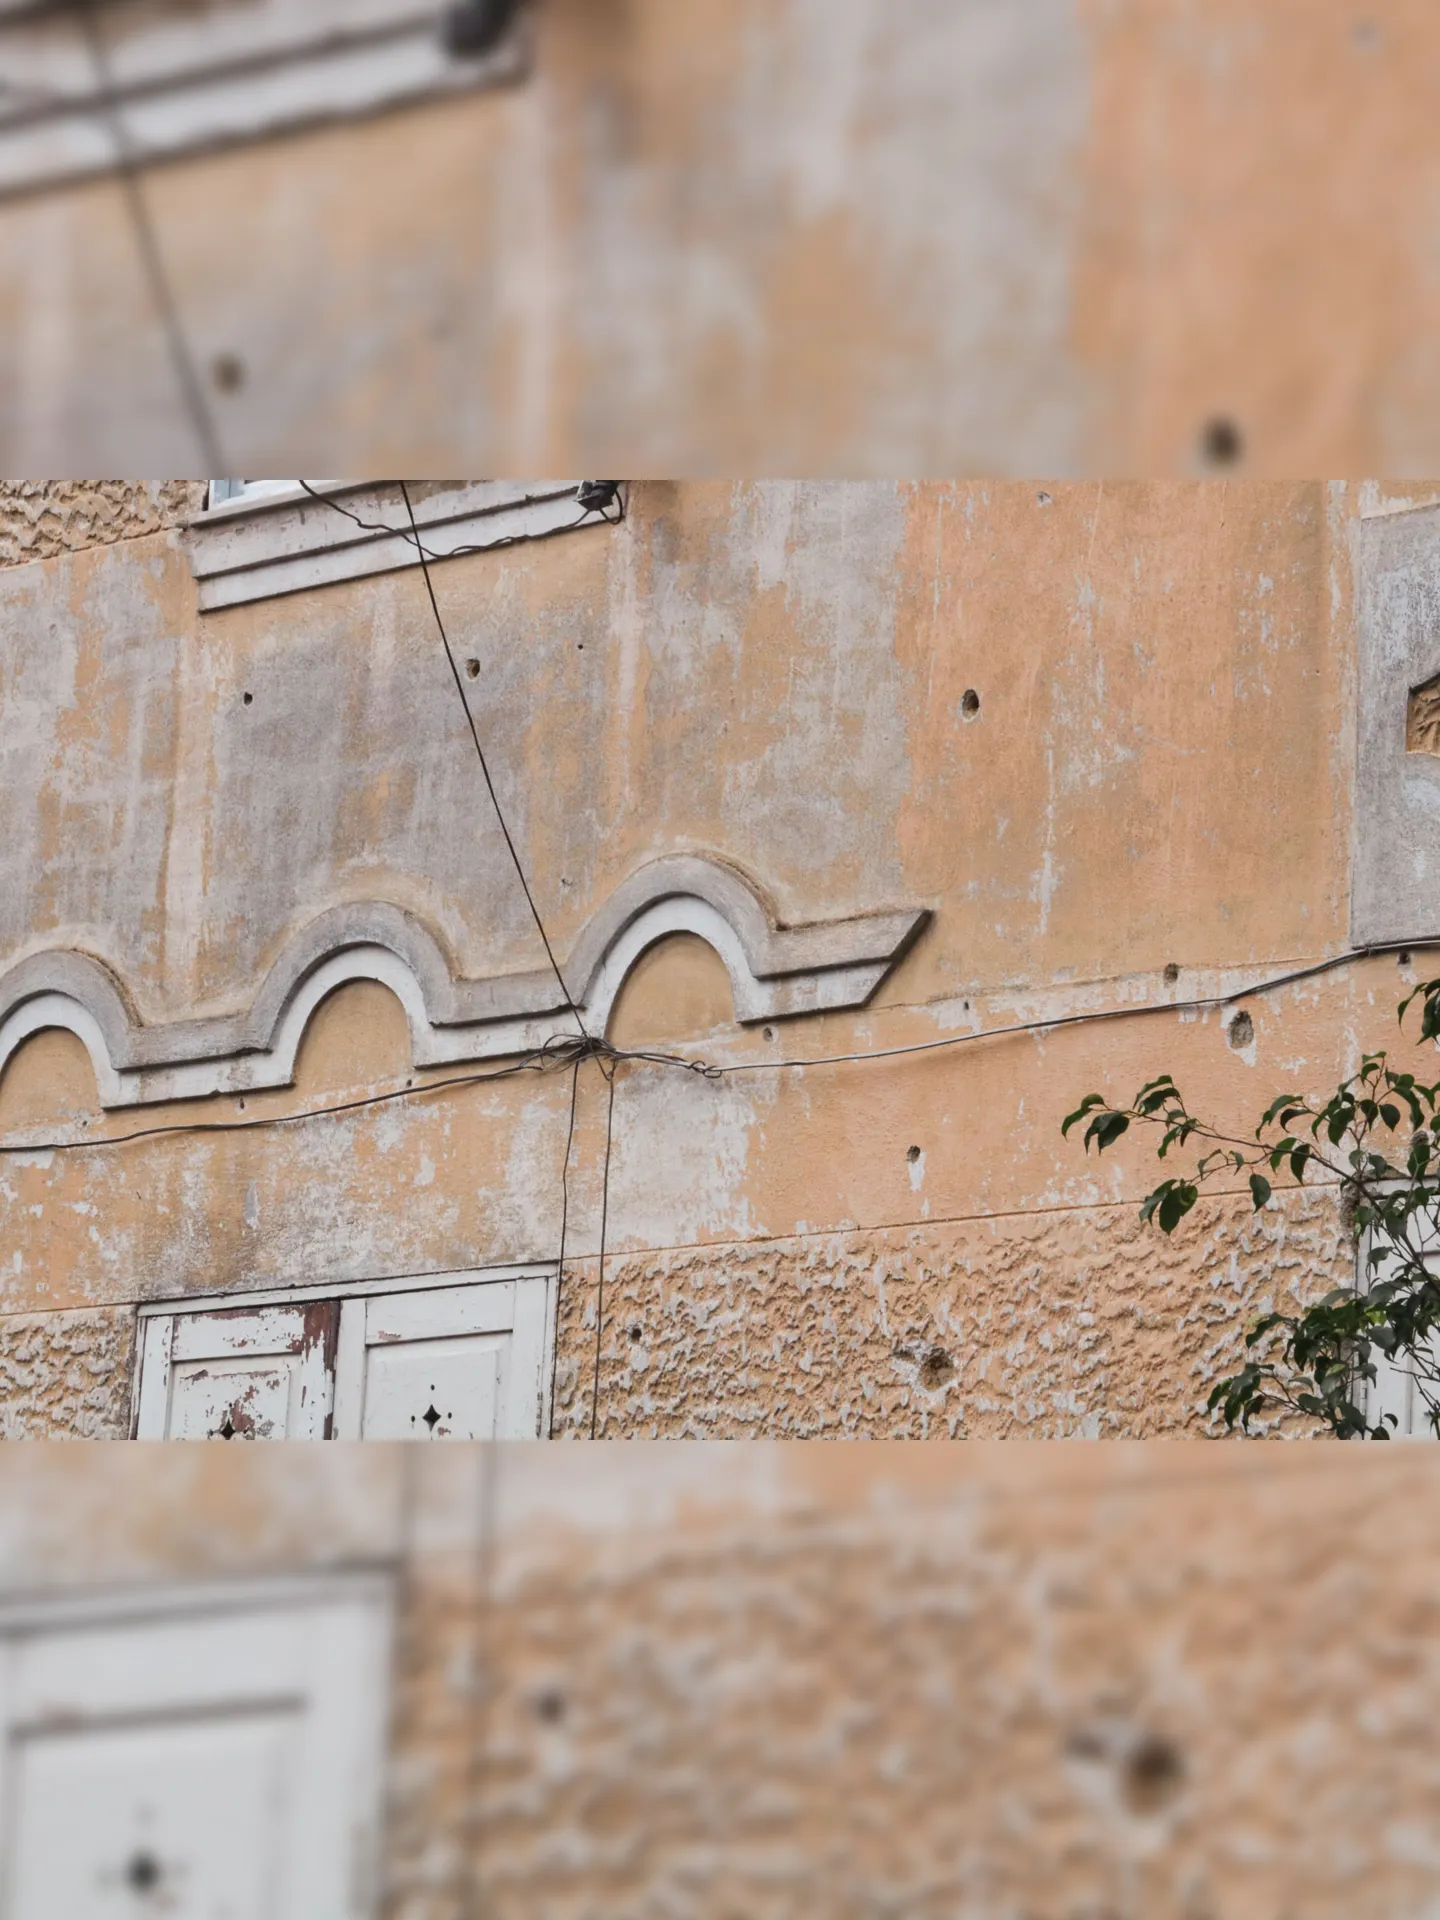 Marcas do confronto ficaram registradas nas paredes de algumas residências